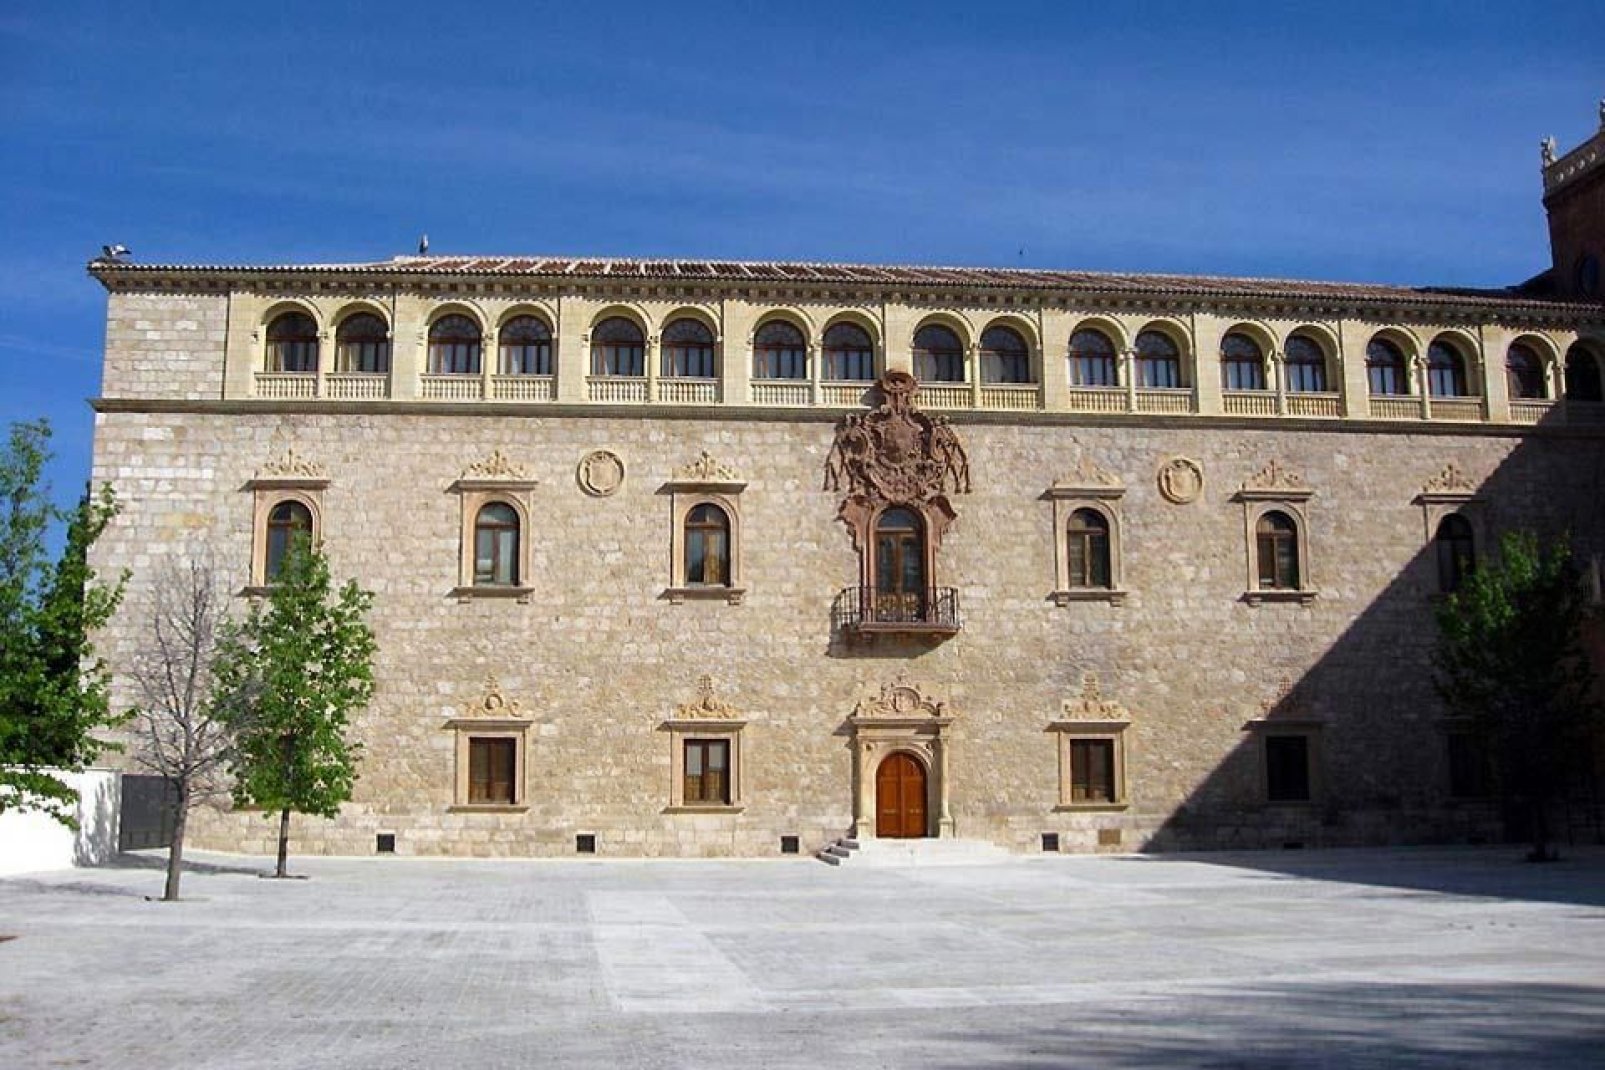 Este monumento forma parte del patrimonio mundial de la Unesco. En el interior se encuentra un gran anfiteatro que es uno de los mejores ejemplos del estilo «Cisneros».